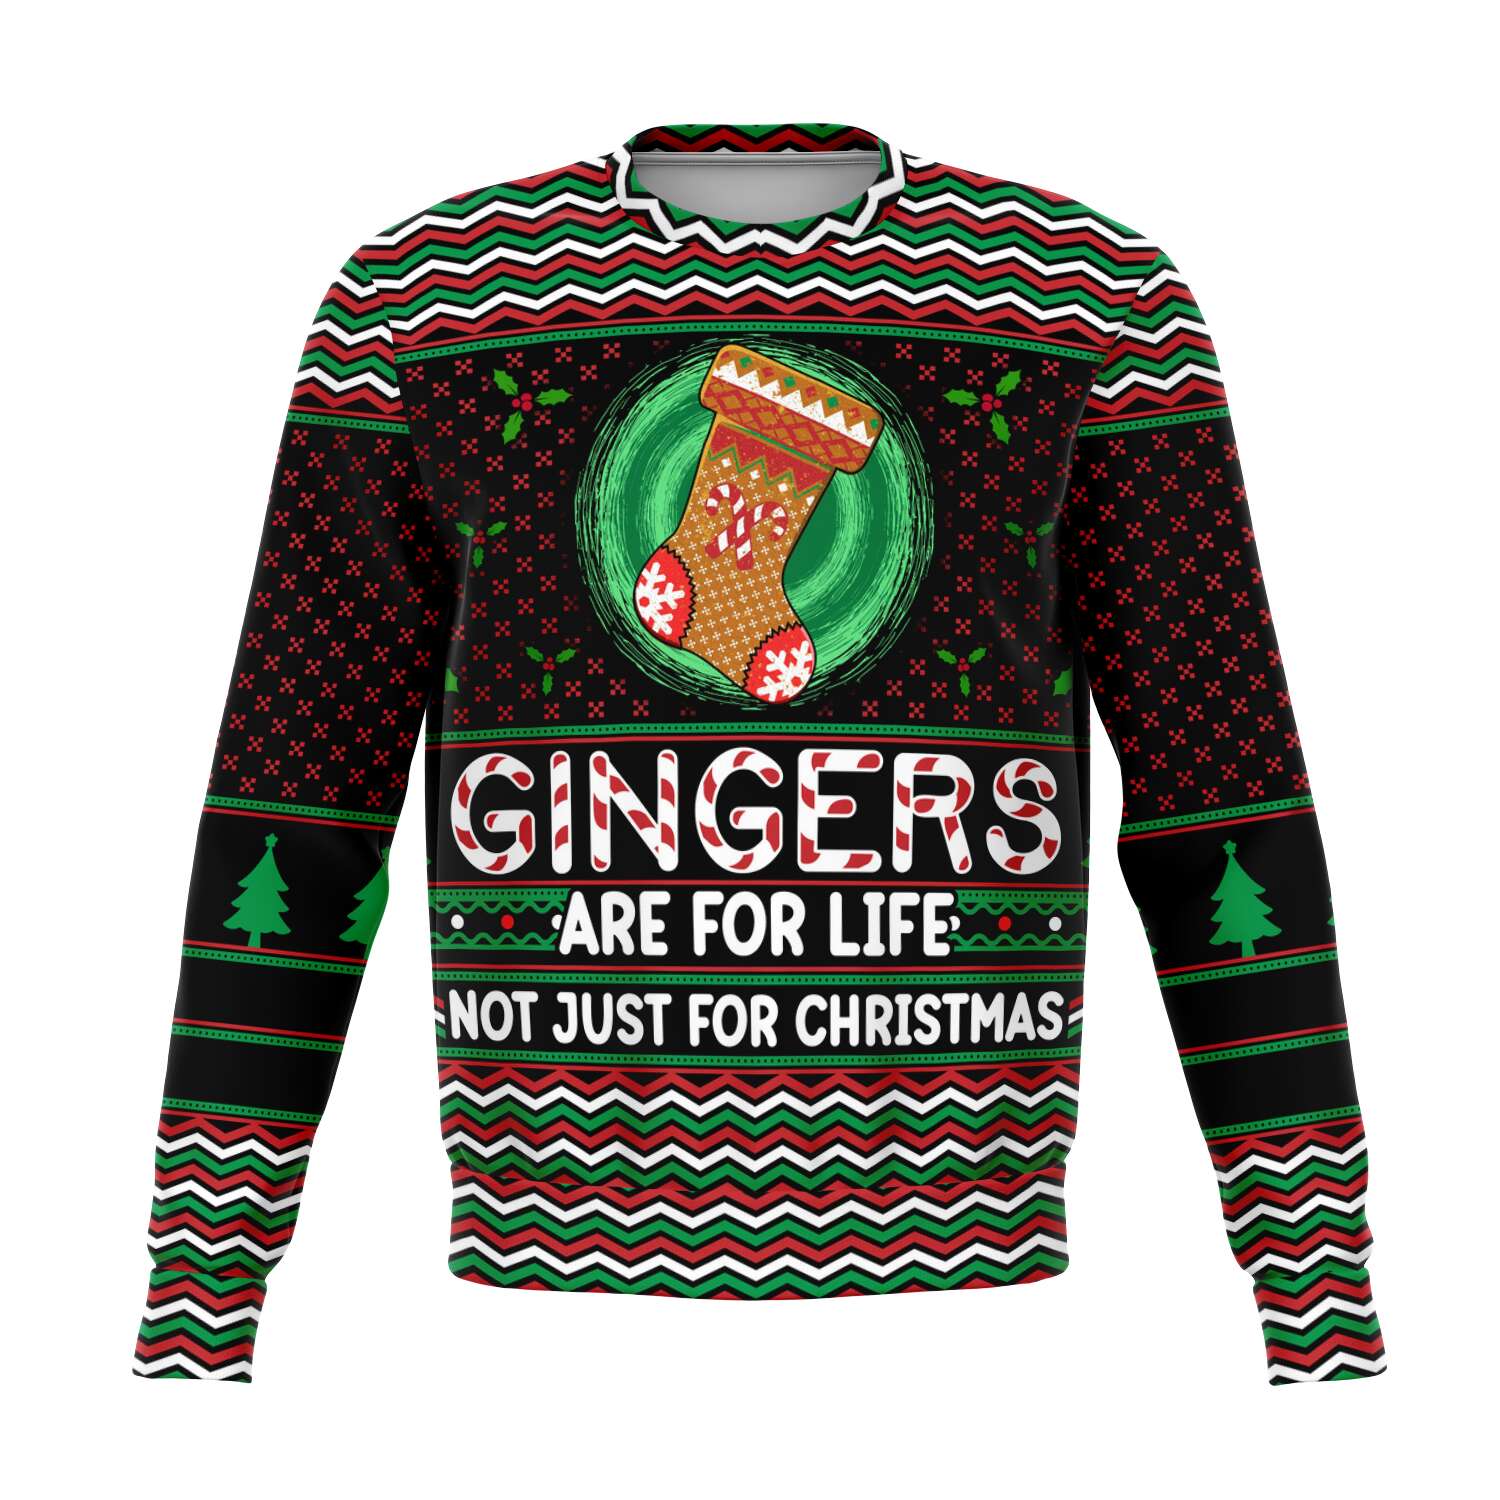 Gingers For Christmas Sweatshirt | Unisex Ugly Christmas Sweater, Xmas Sweater, Holiday Sweater, Festive Sweater, Funny Redhead Sweater, Funny Party Shirt